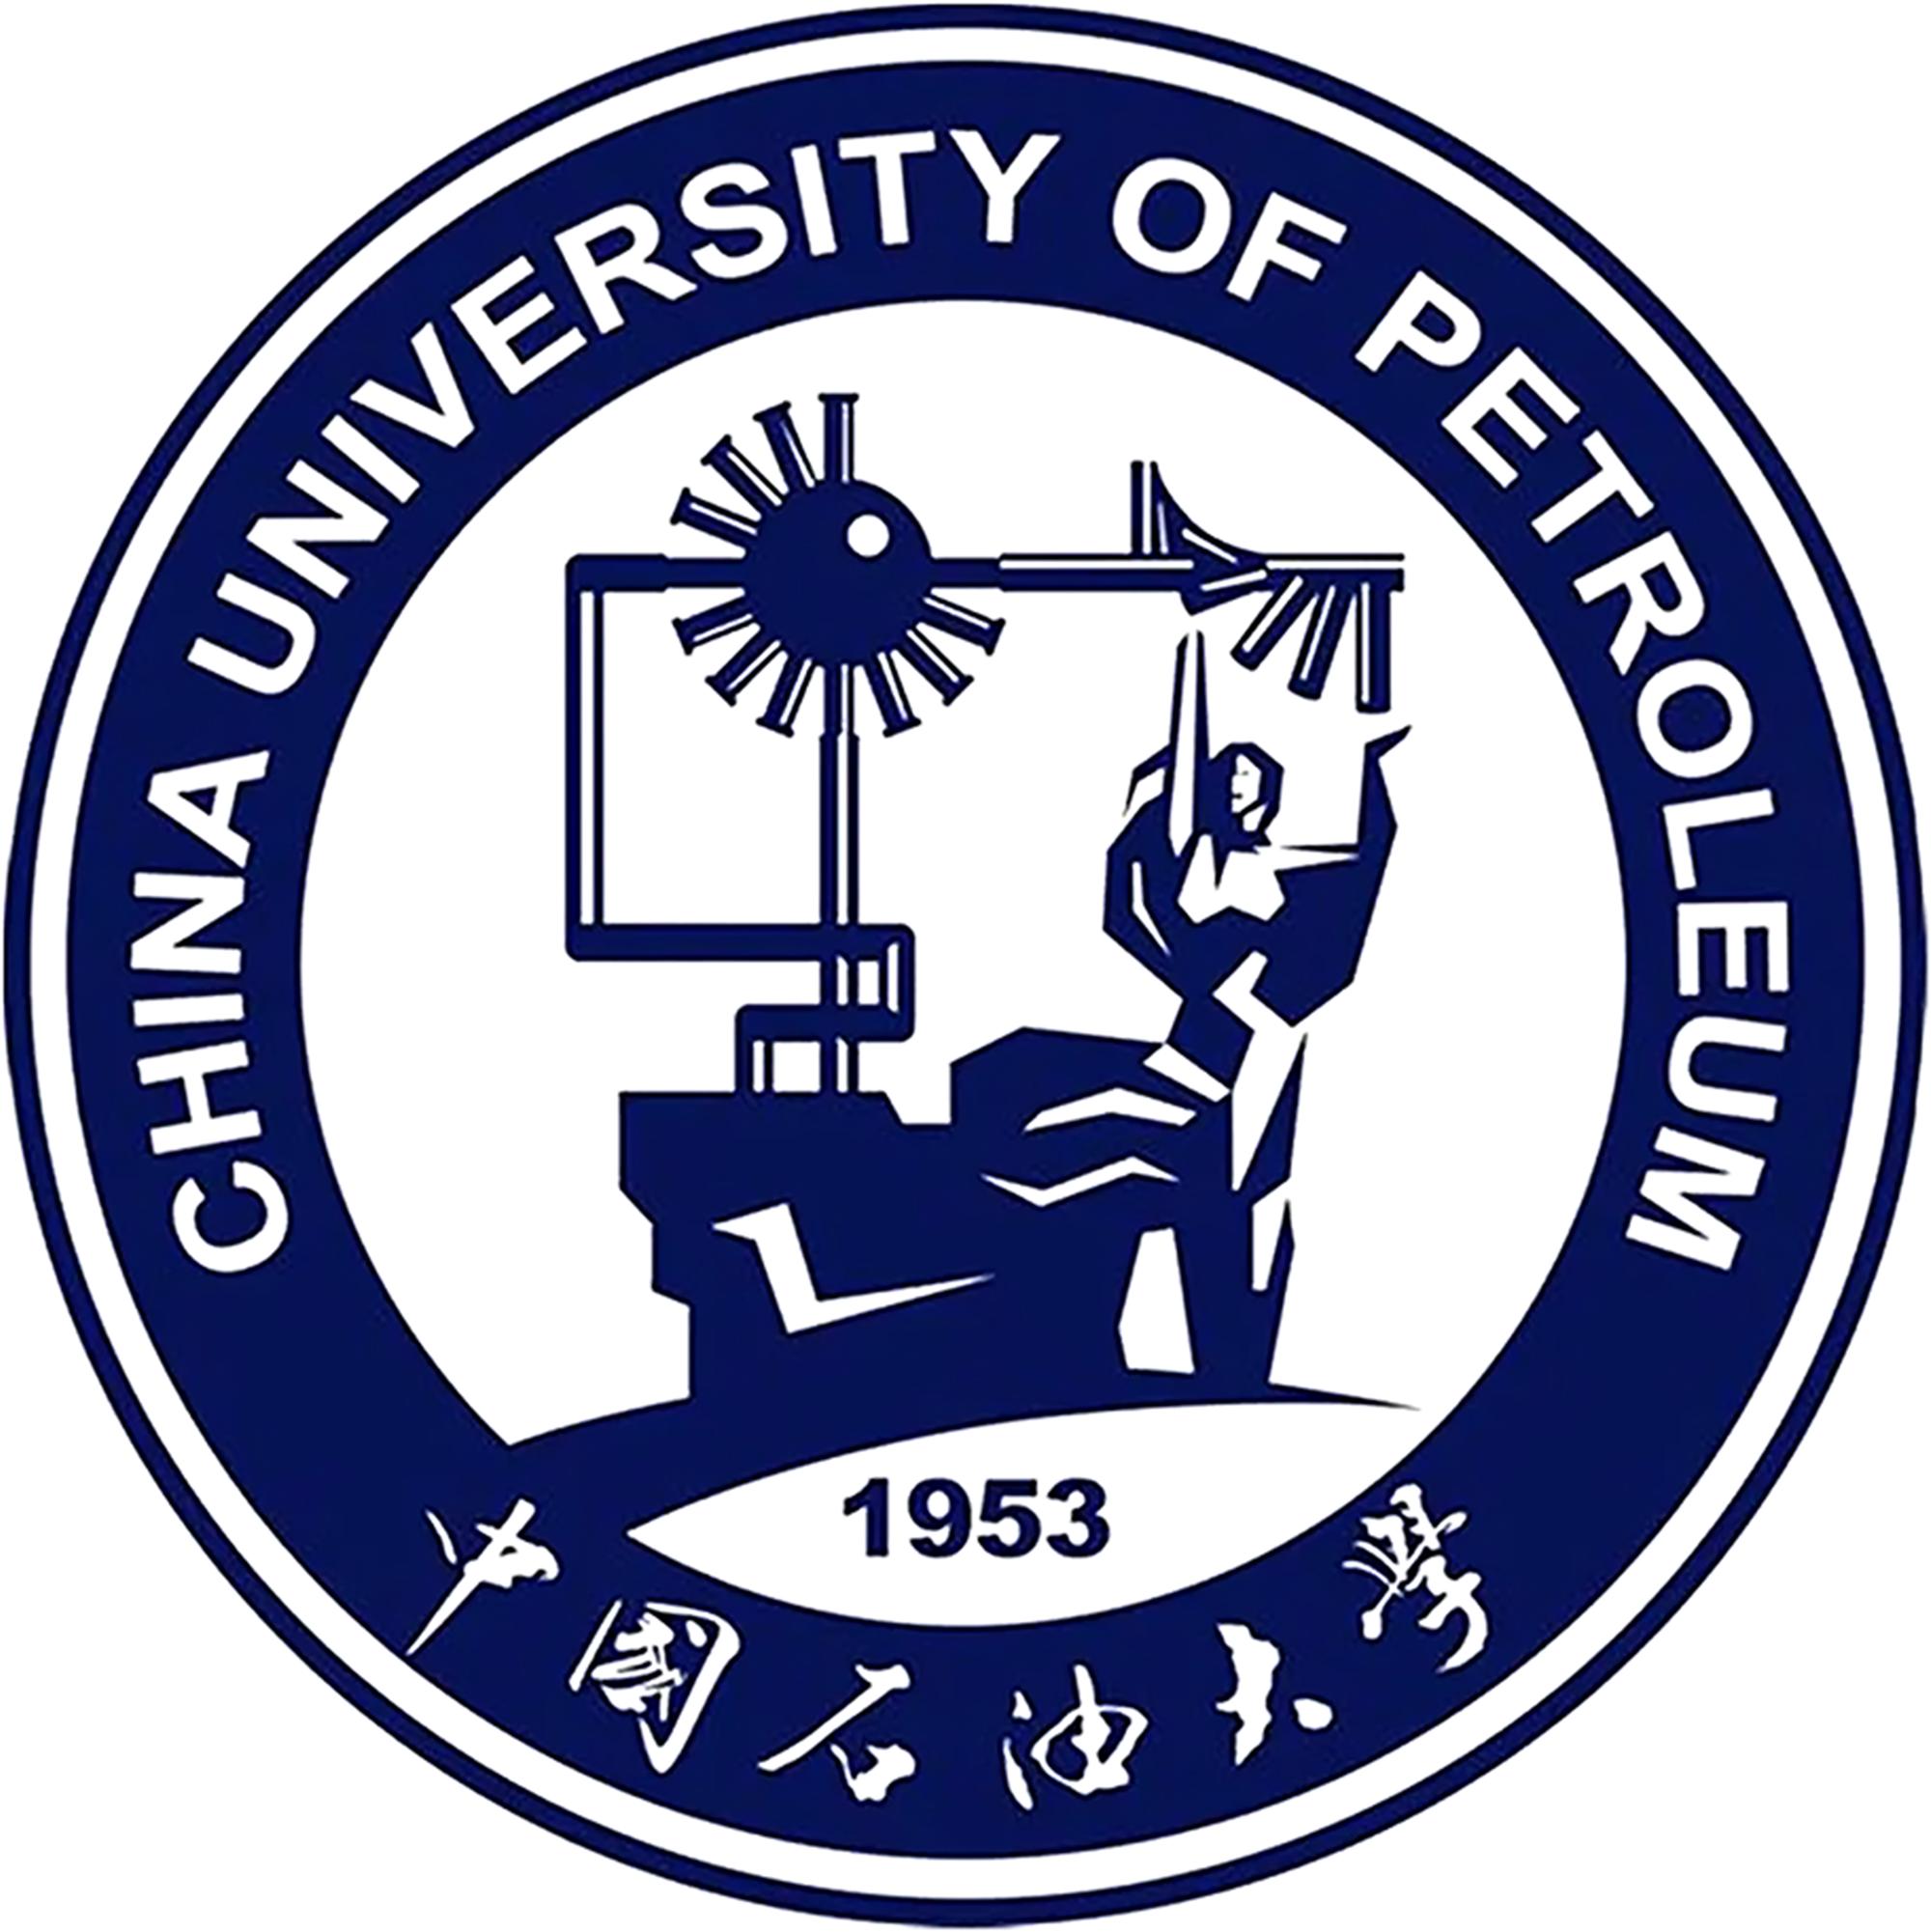 中国蓝色校徽的大学图片